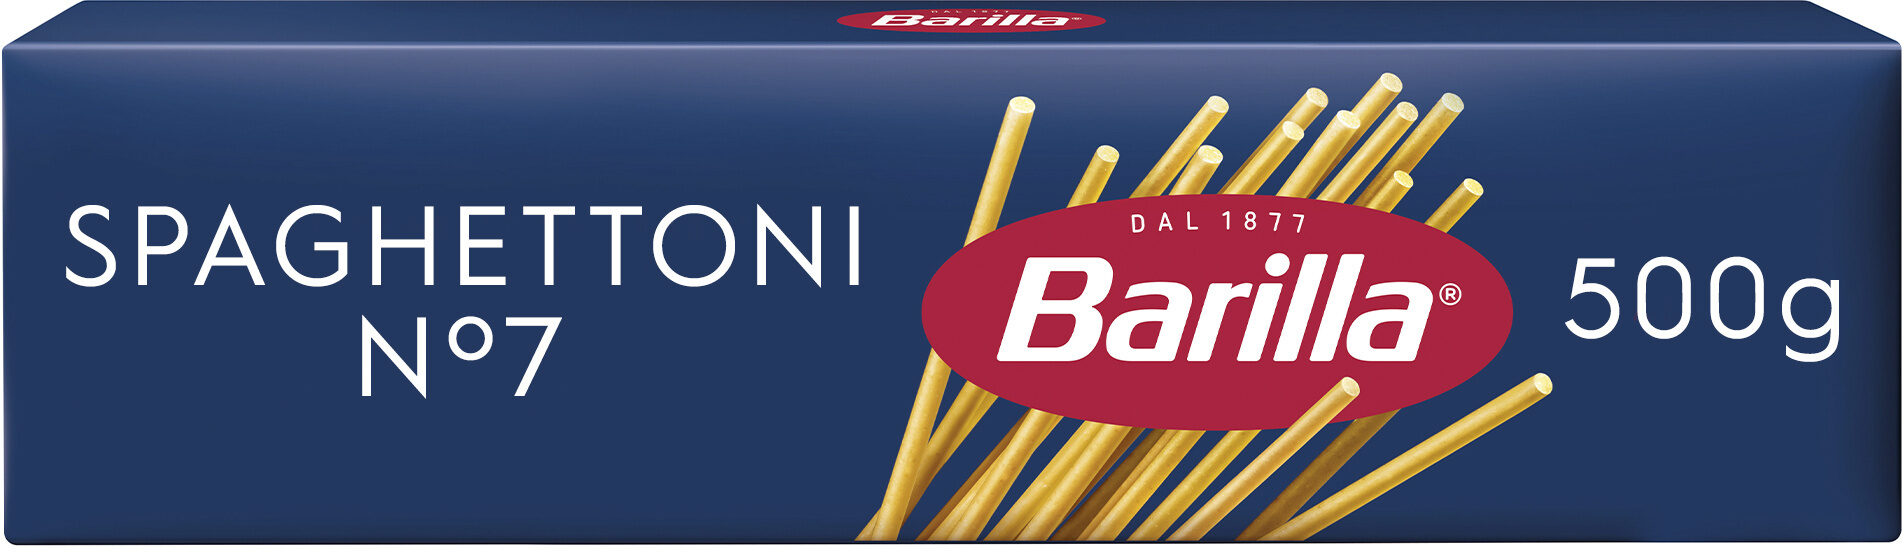 Barilla pates spaghettoni n°7 500g - Produit